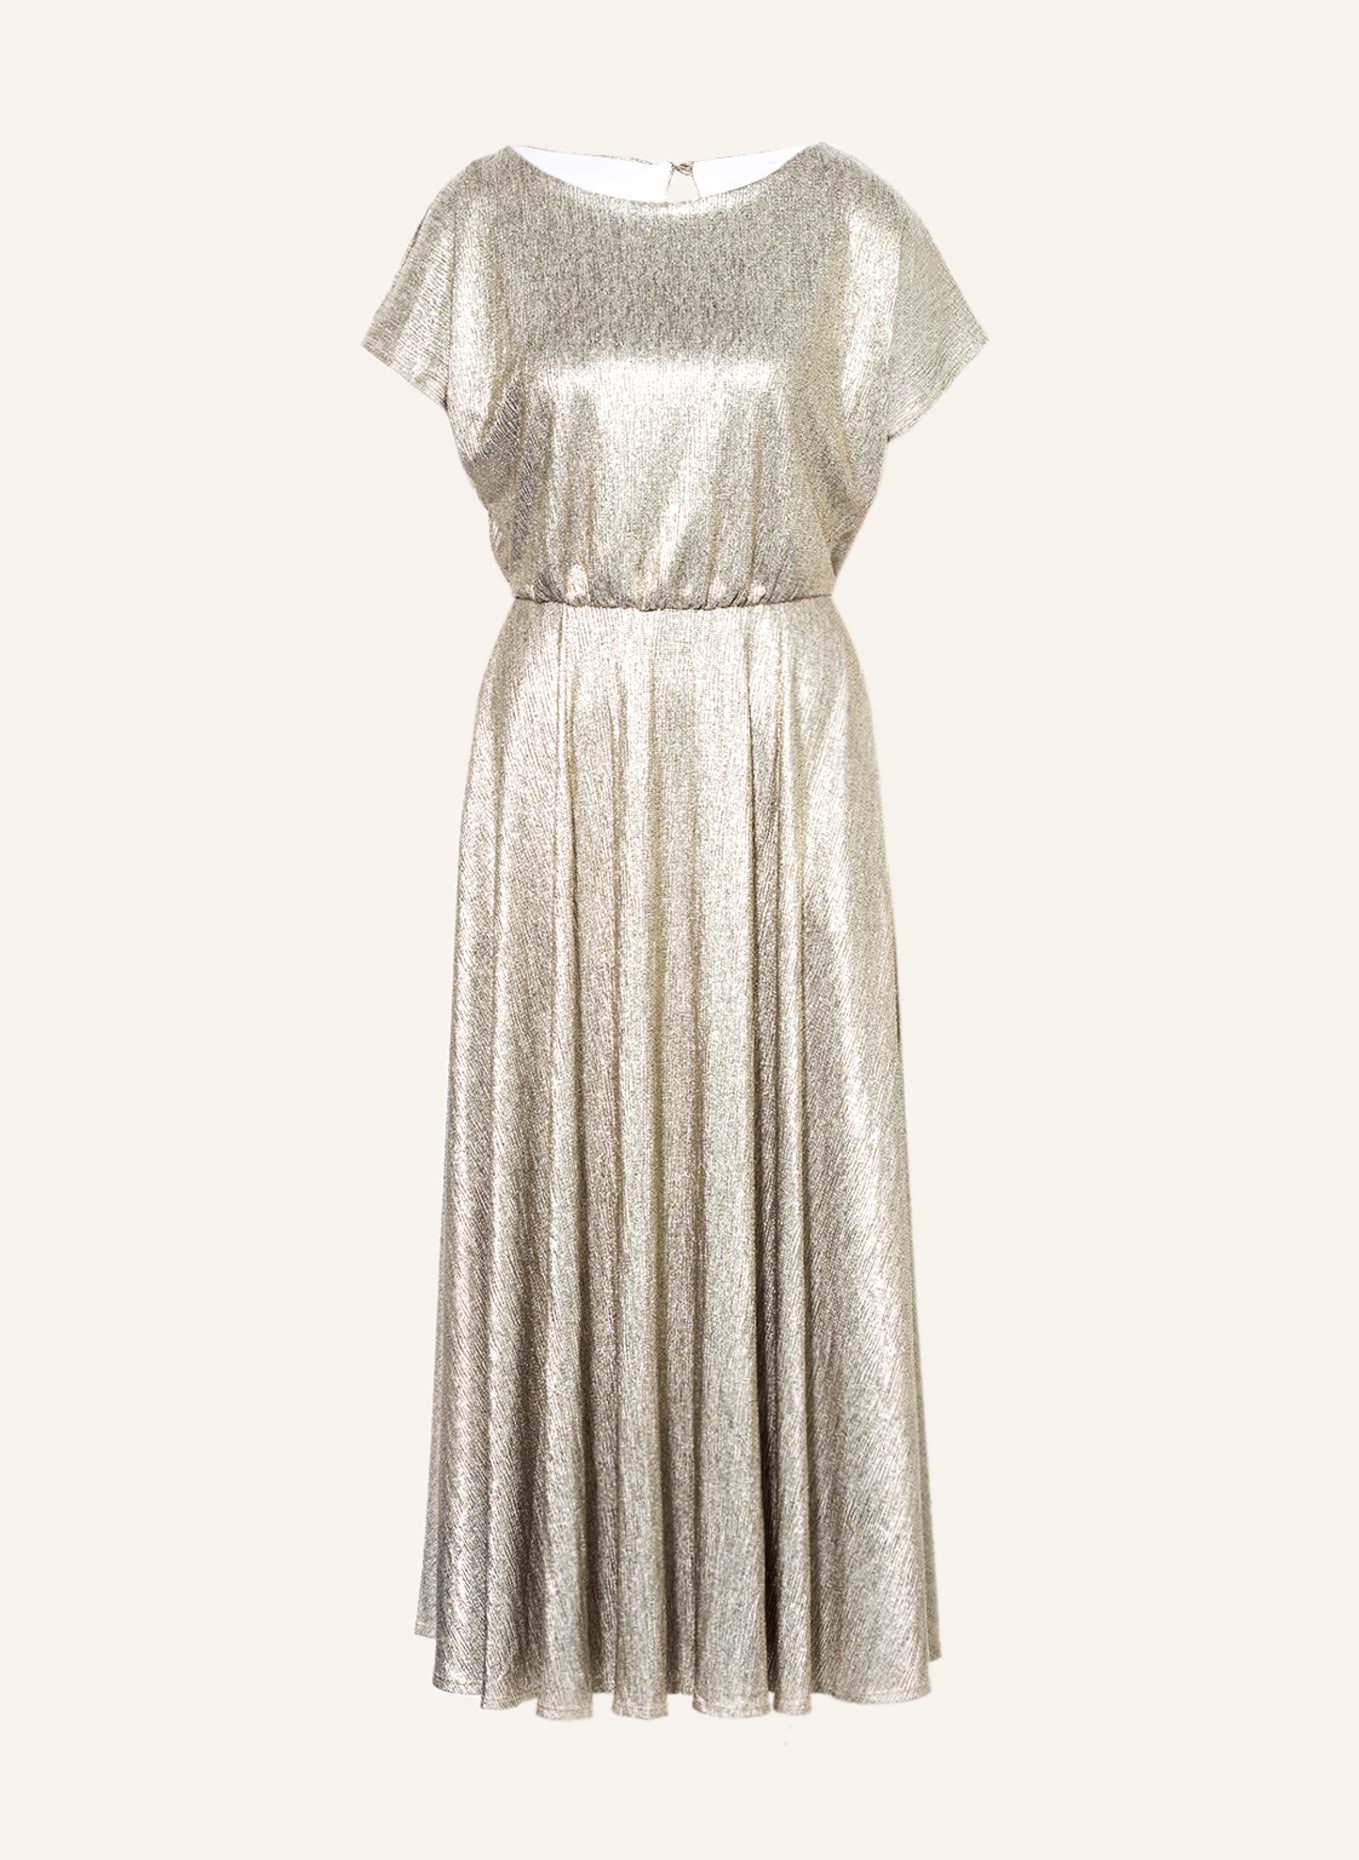 SWING Cold-shoulder dress, Color: GOLD (Image 1)